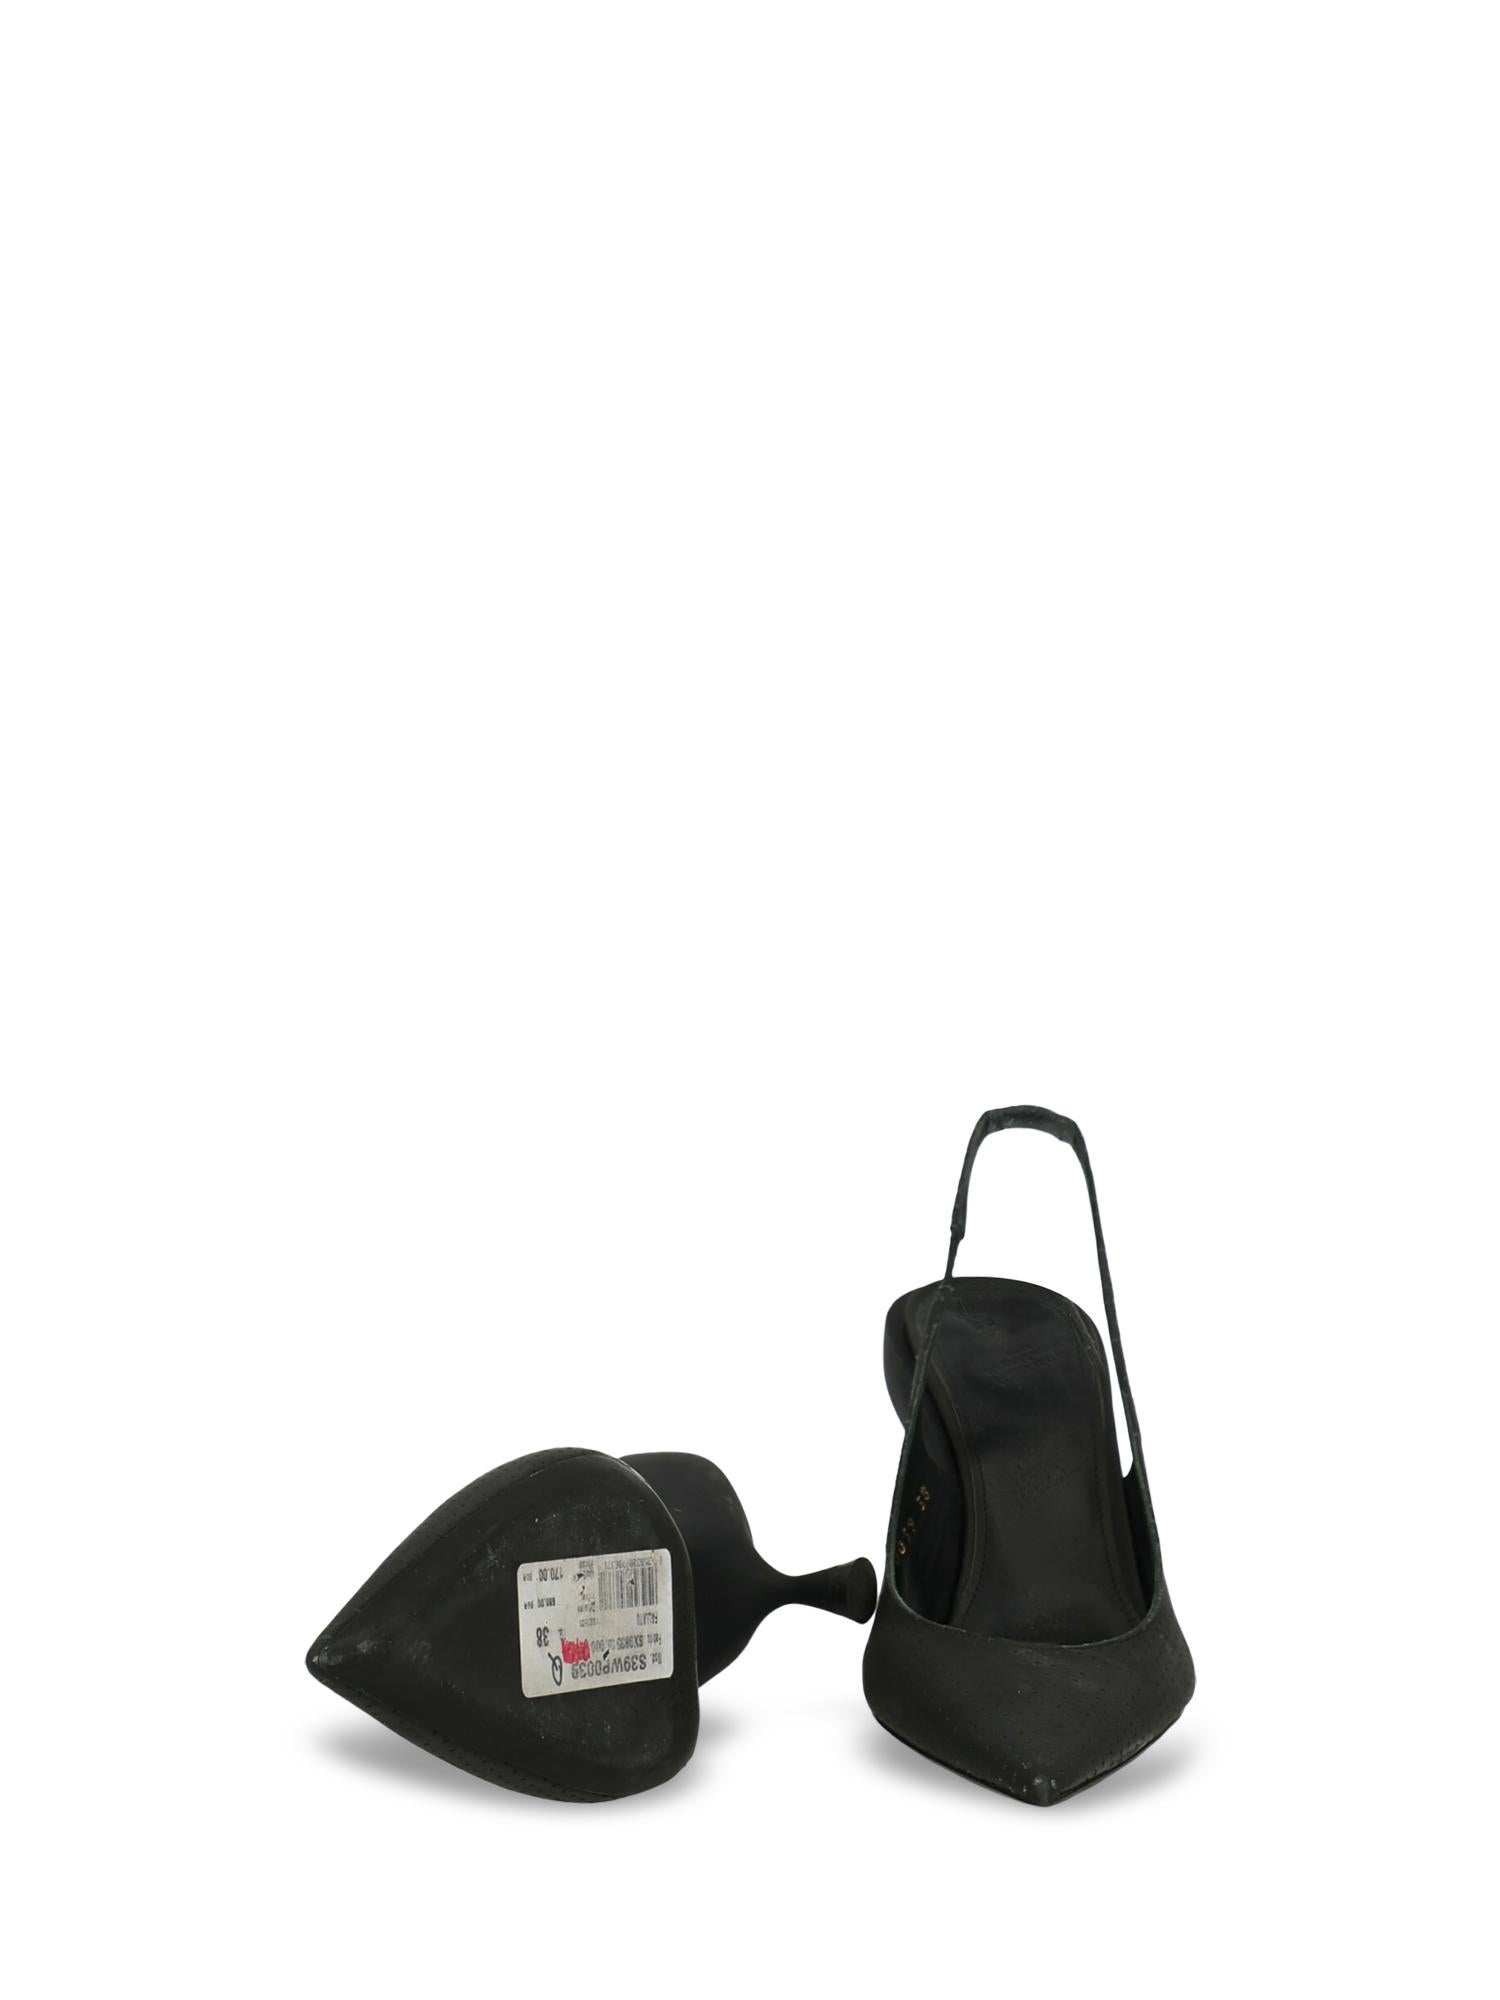 Maison Margiela Woman Pumps Black Leather IT 38 For Sale 1